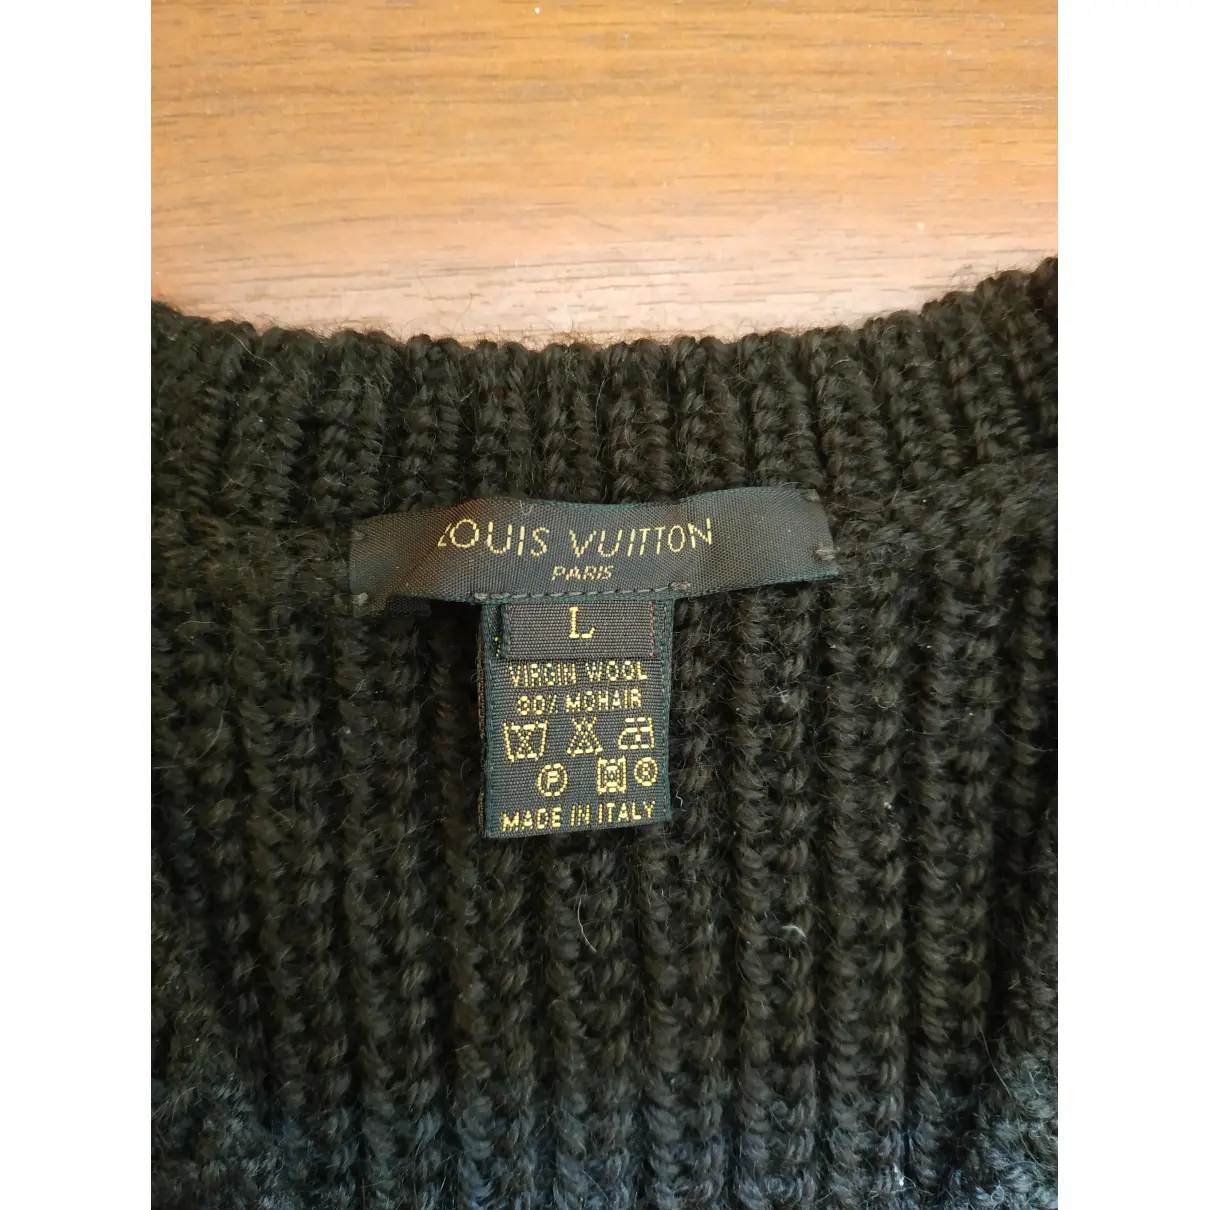 Buy Louis Vuitton Wool knitwear online